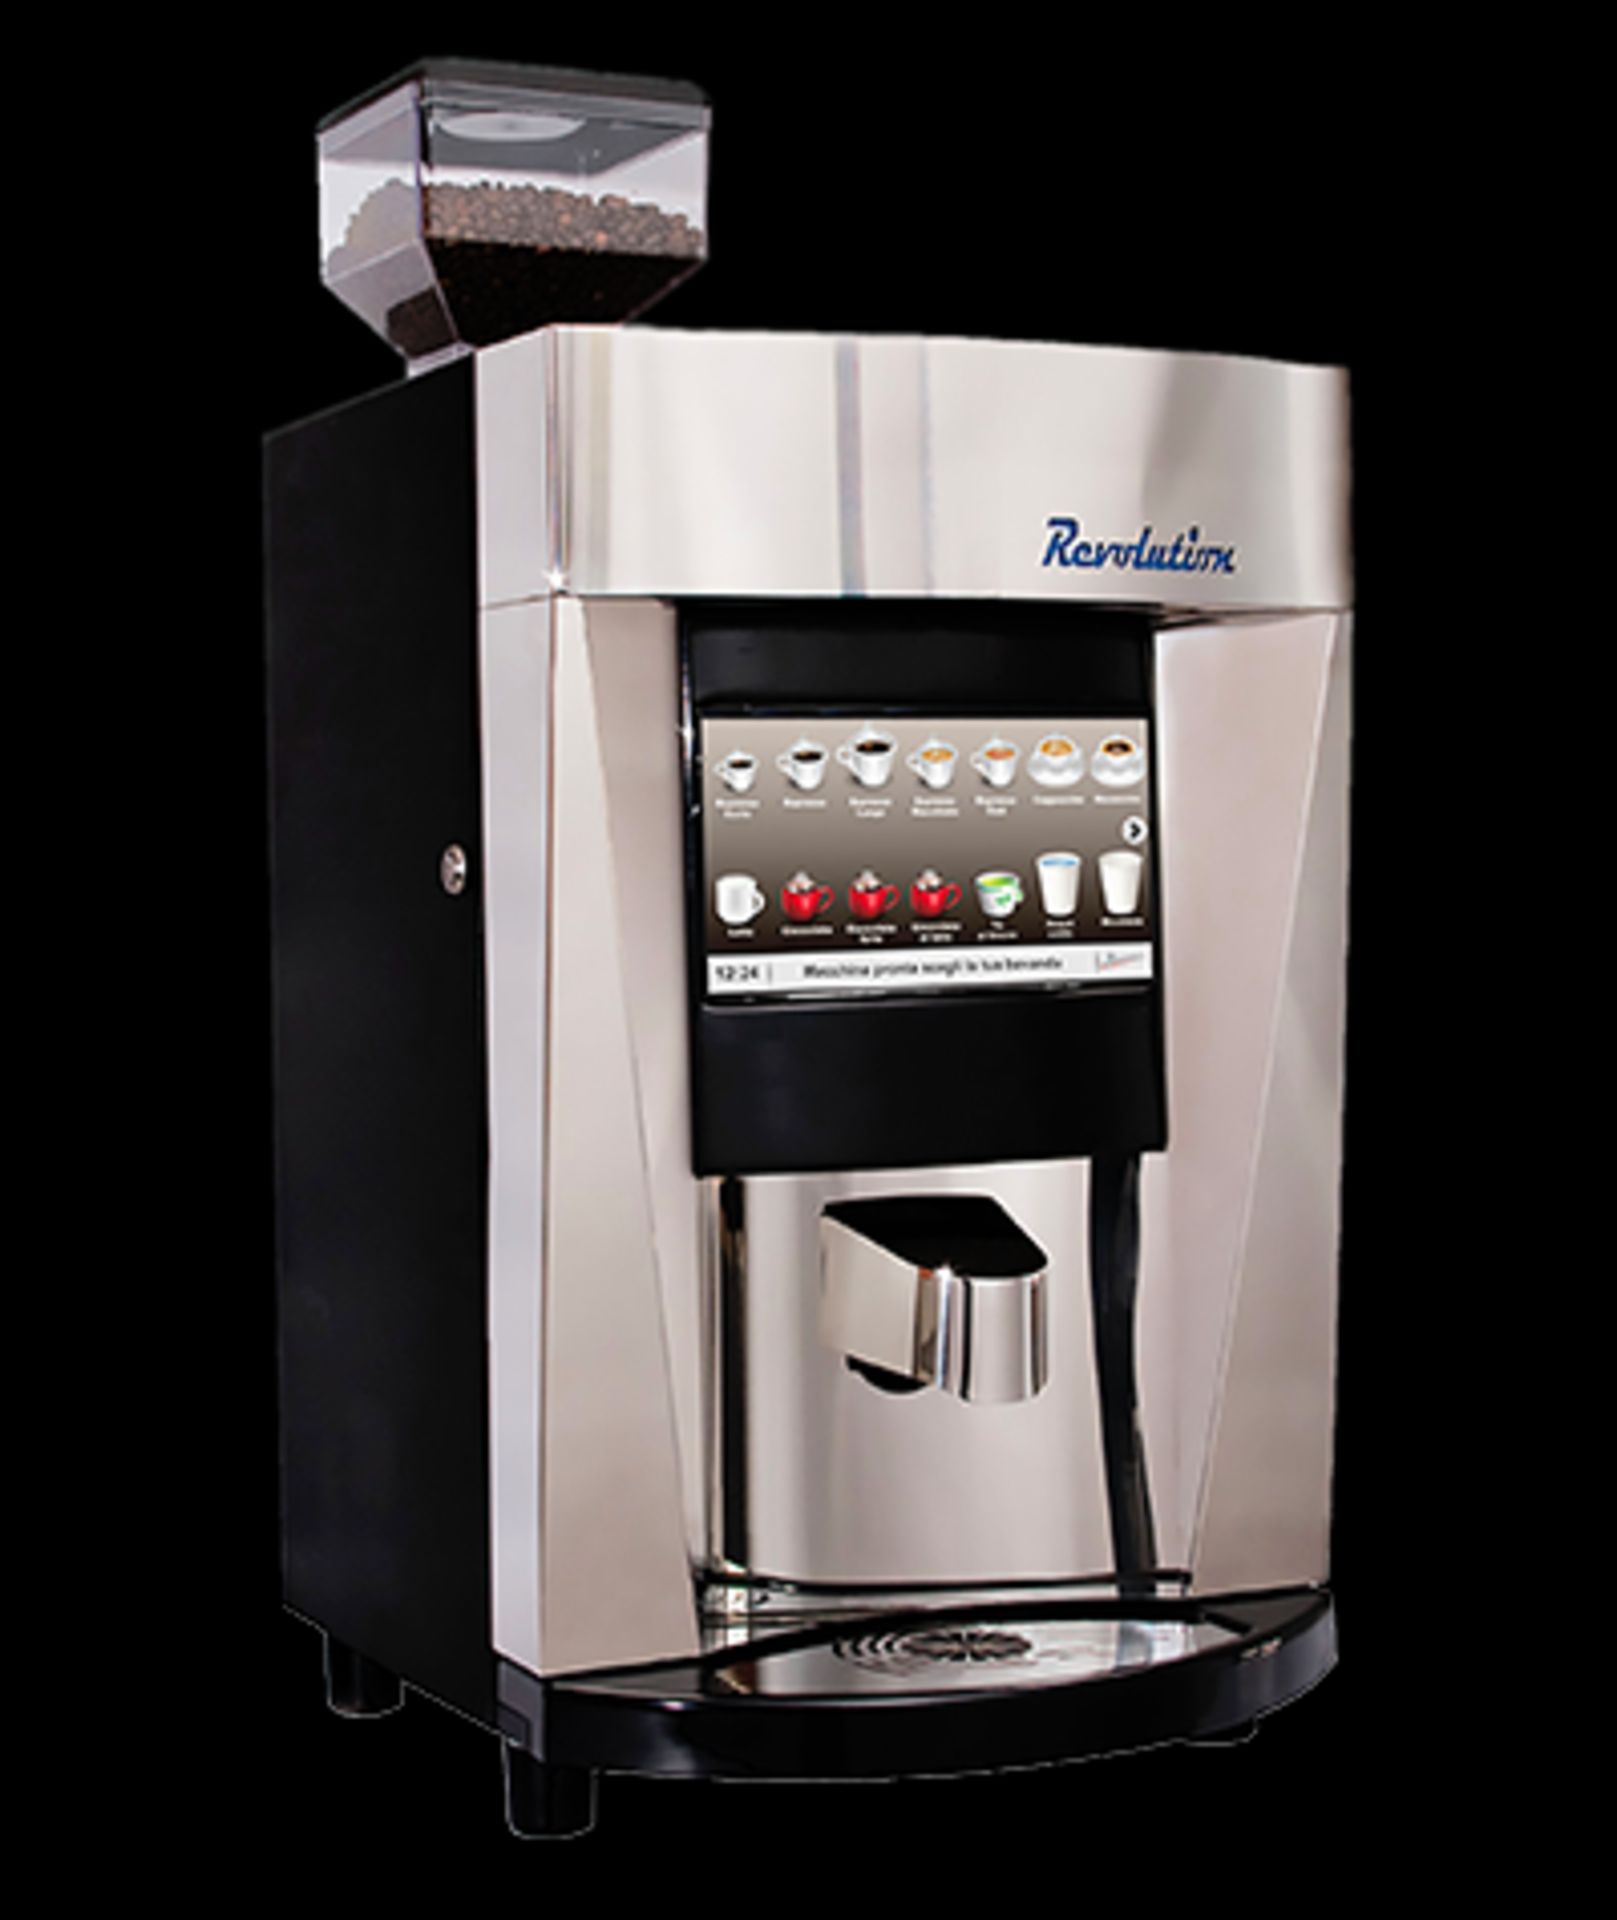 1 x Revolution Single Hopper Automatic Espresso Machine - Ref: LD438 - CL443 - Location: Altrincham - Image 2 of 17